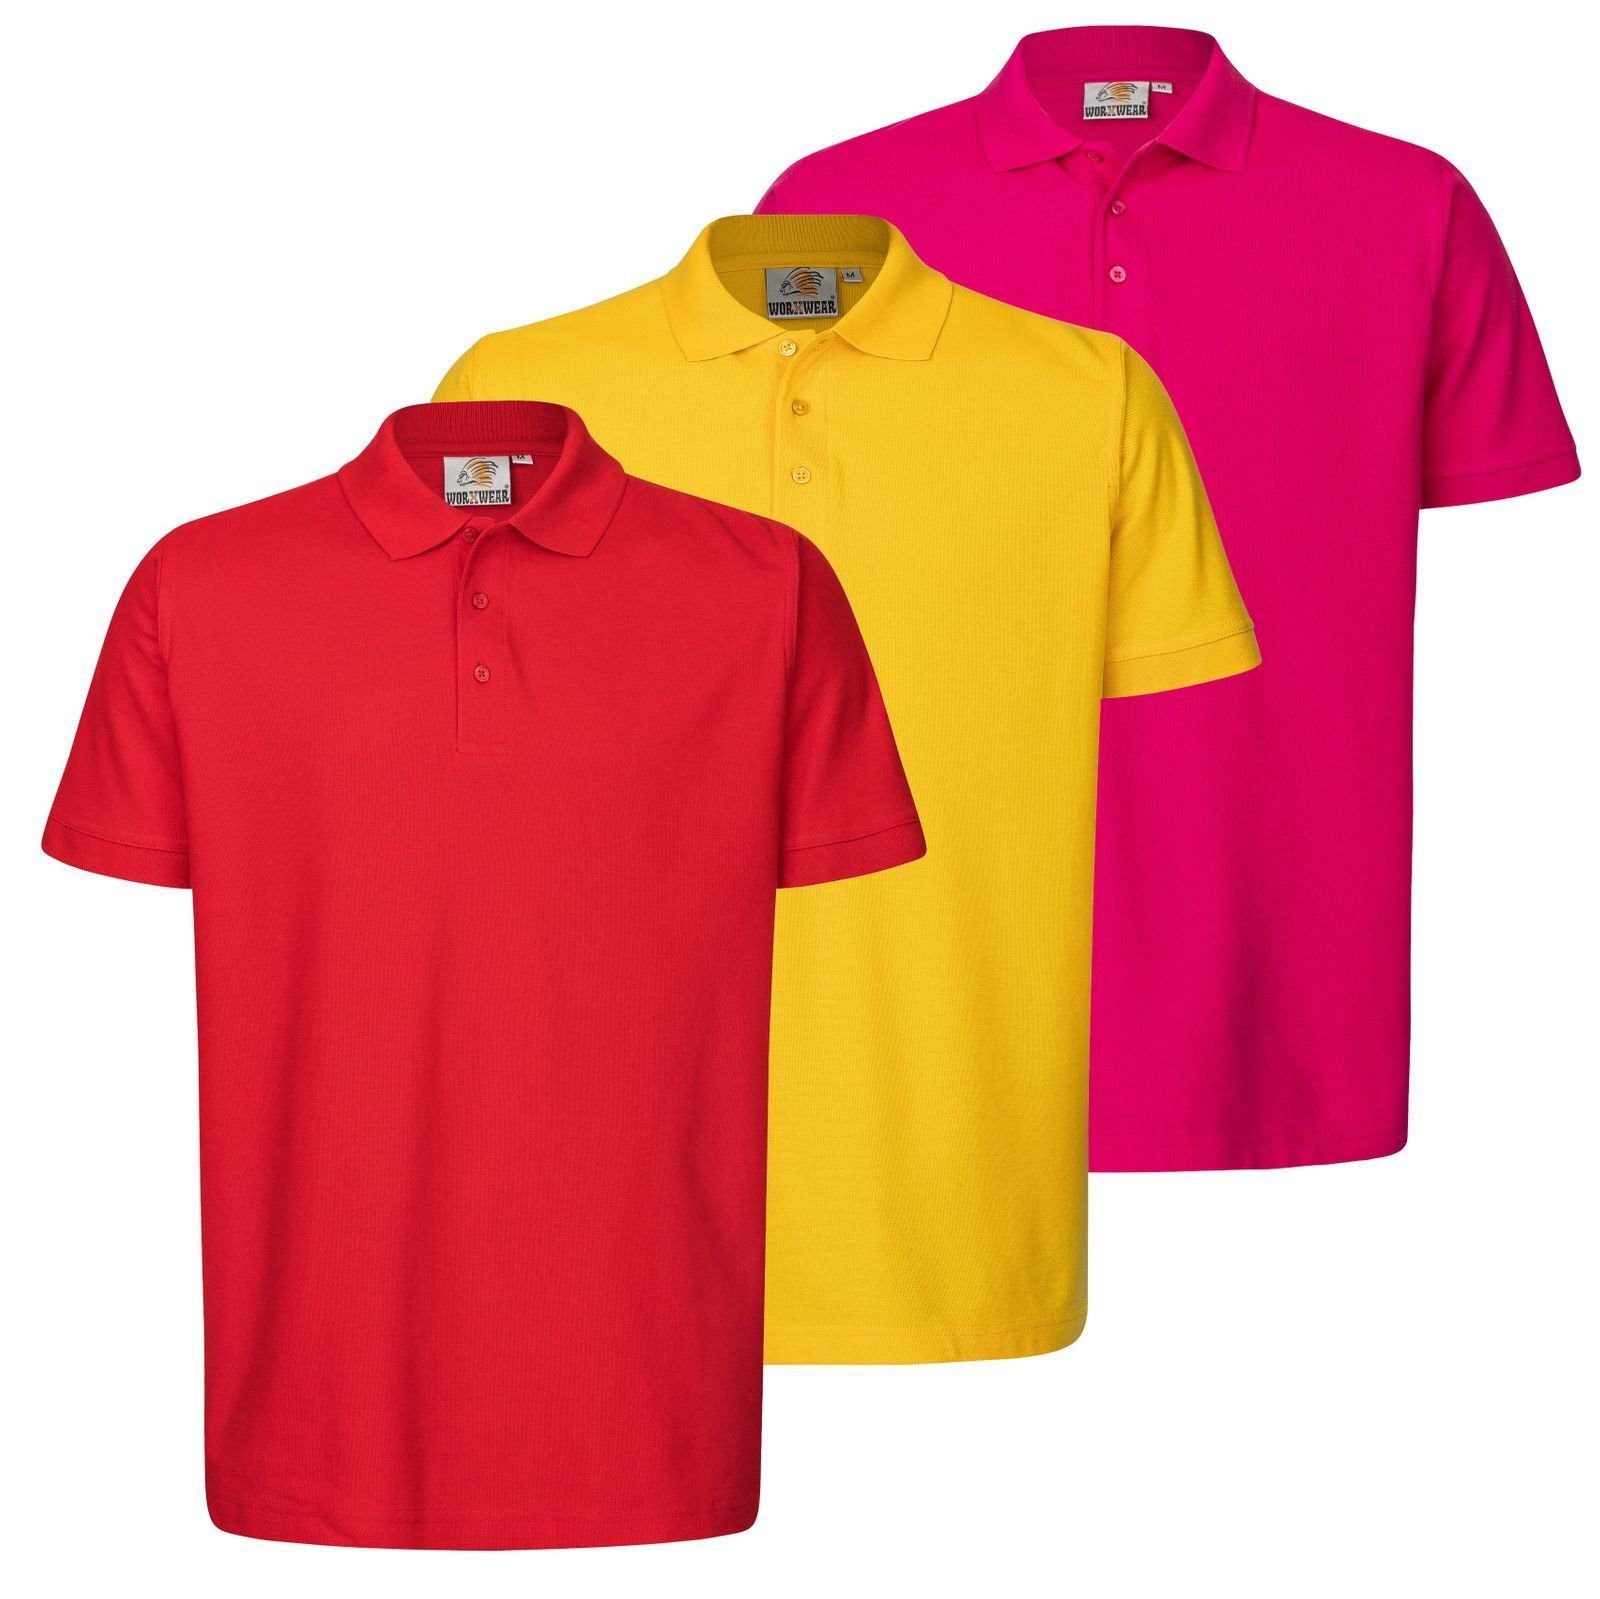 WORXWEAR Poloshirt Herren (Spar-Set, 3er-Pack) strapazierfähiges Poloshirt mit Einlaufwert < 5% Gelb, Rosa, Rot